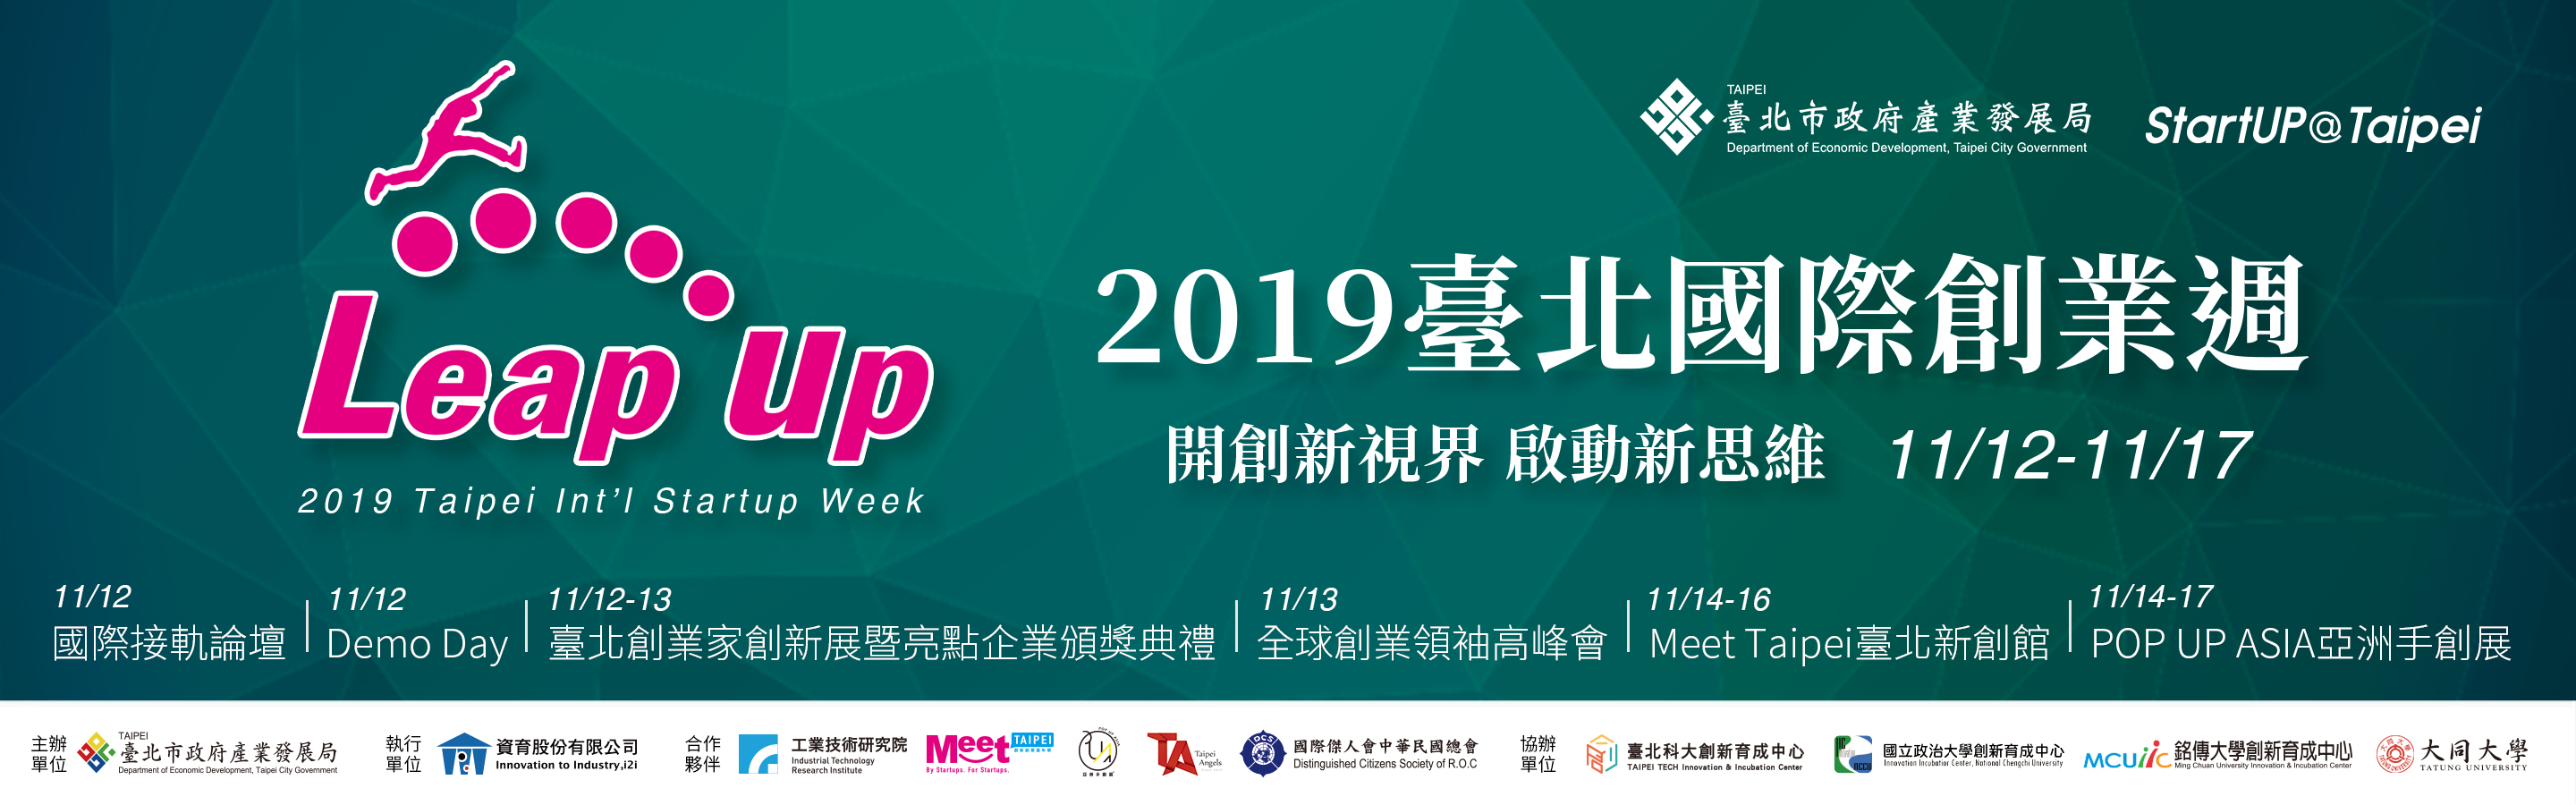 2019 Taipei Int'l Startup Week 11/12-11/17Image